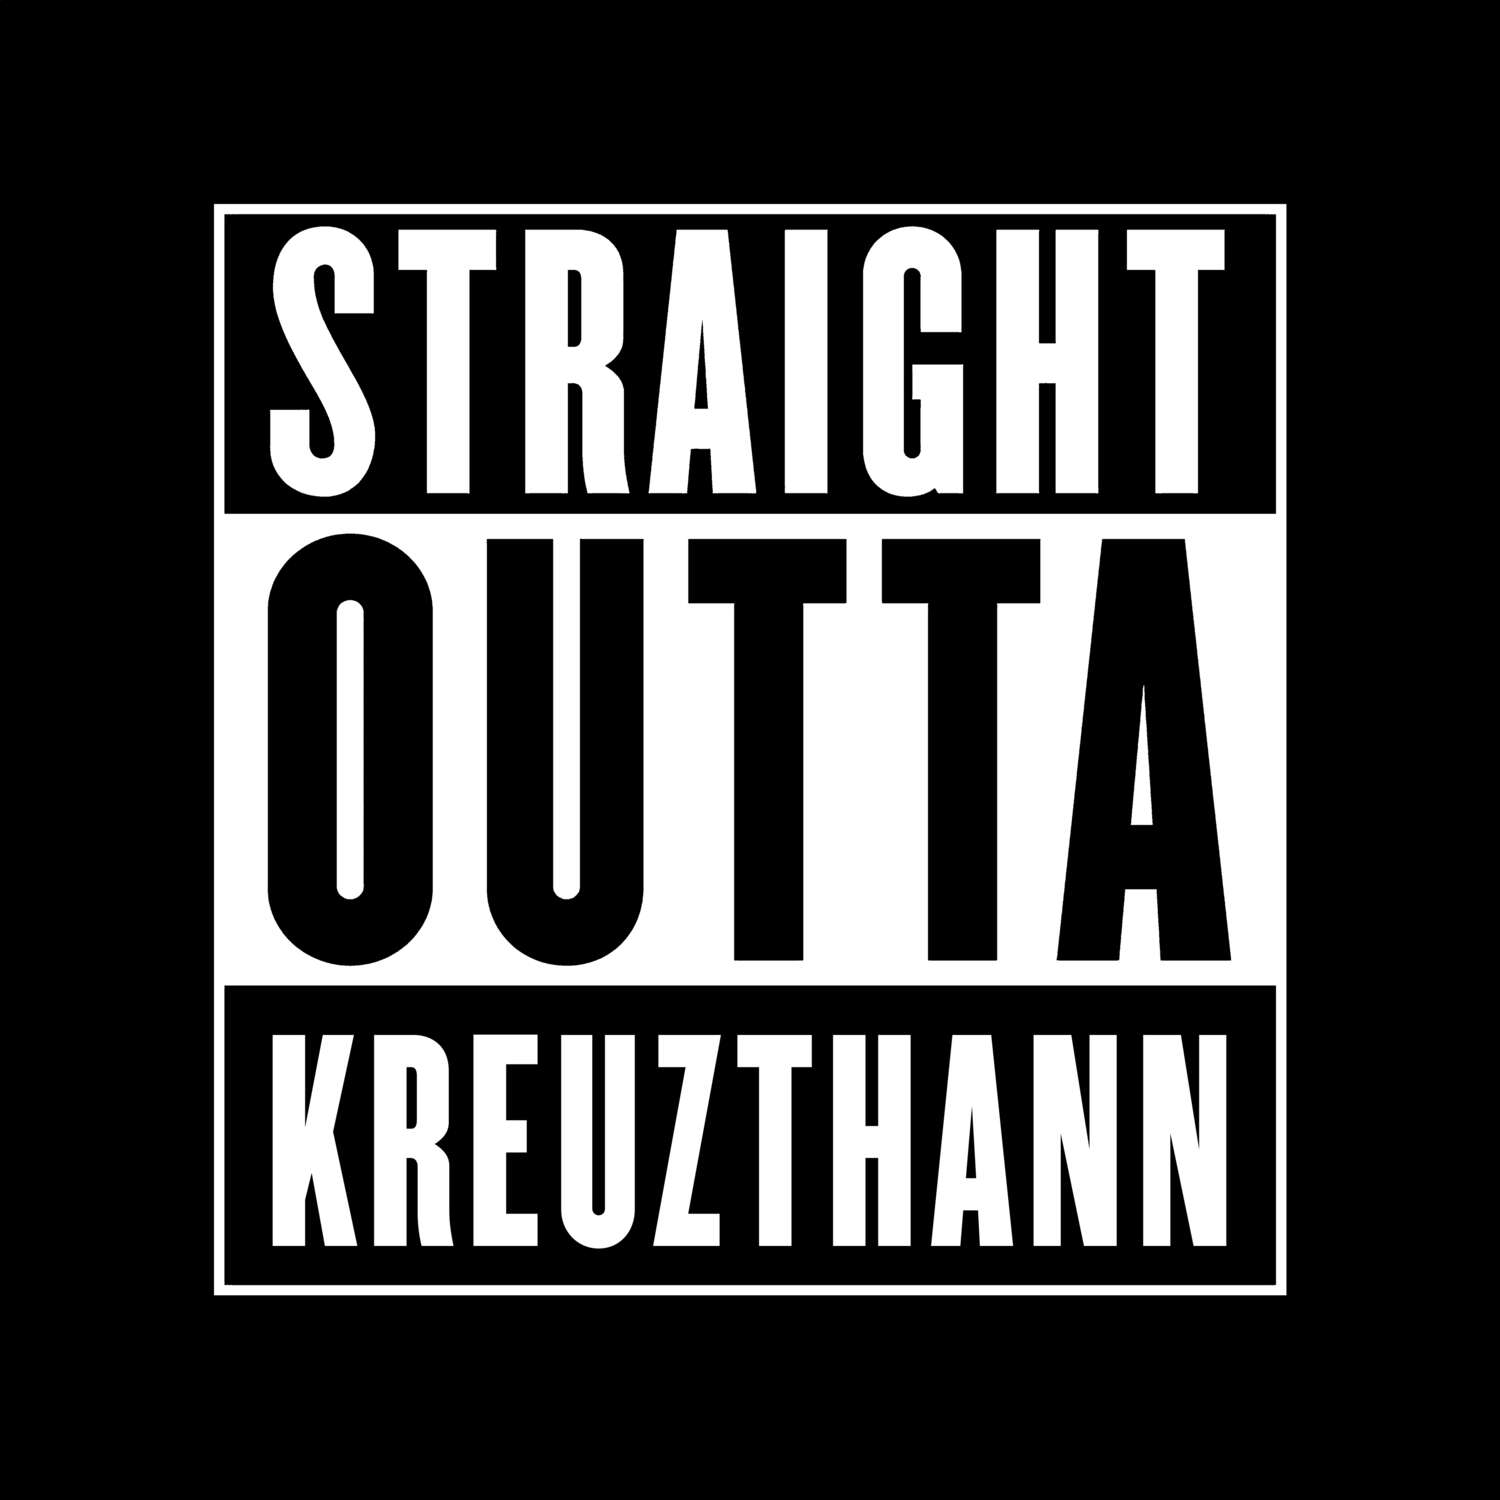 Kreuzthann T-Shirt »Straight Outta«